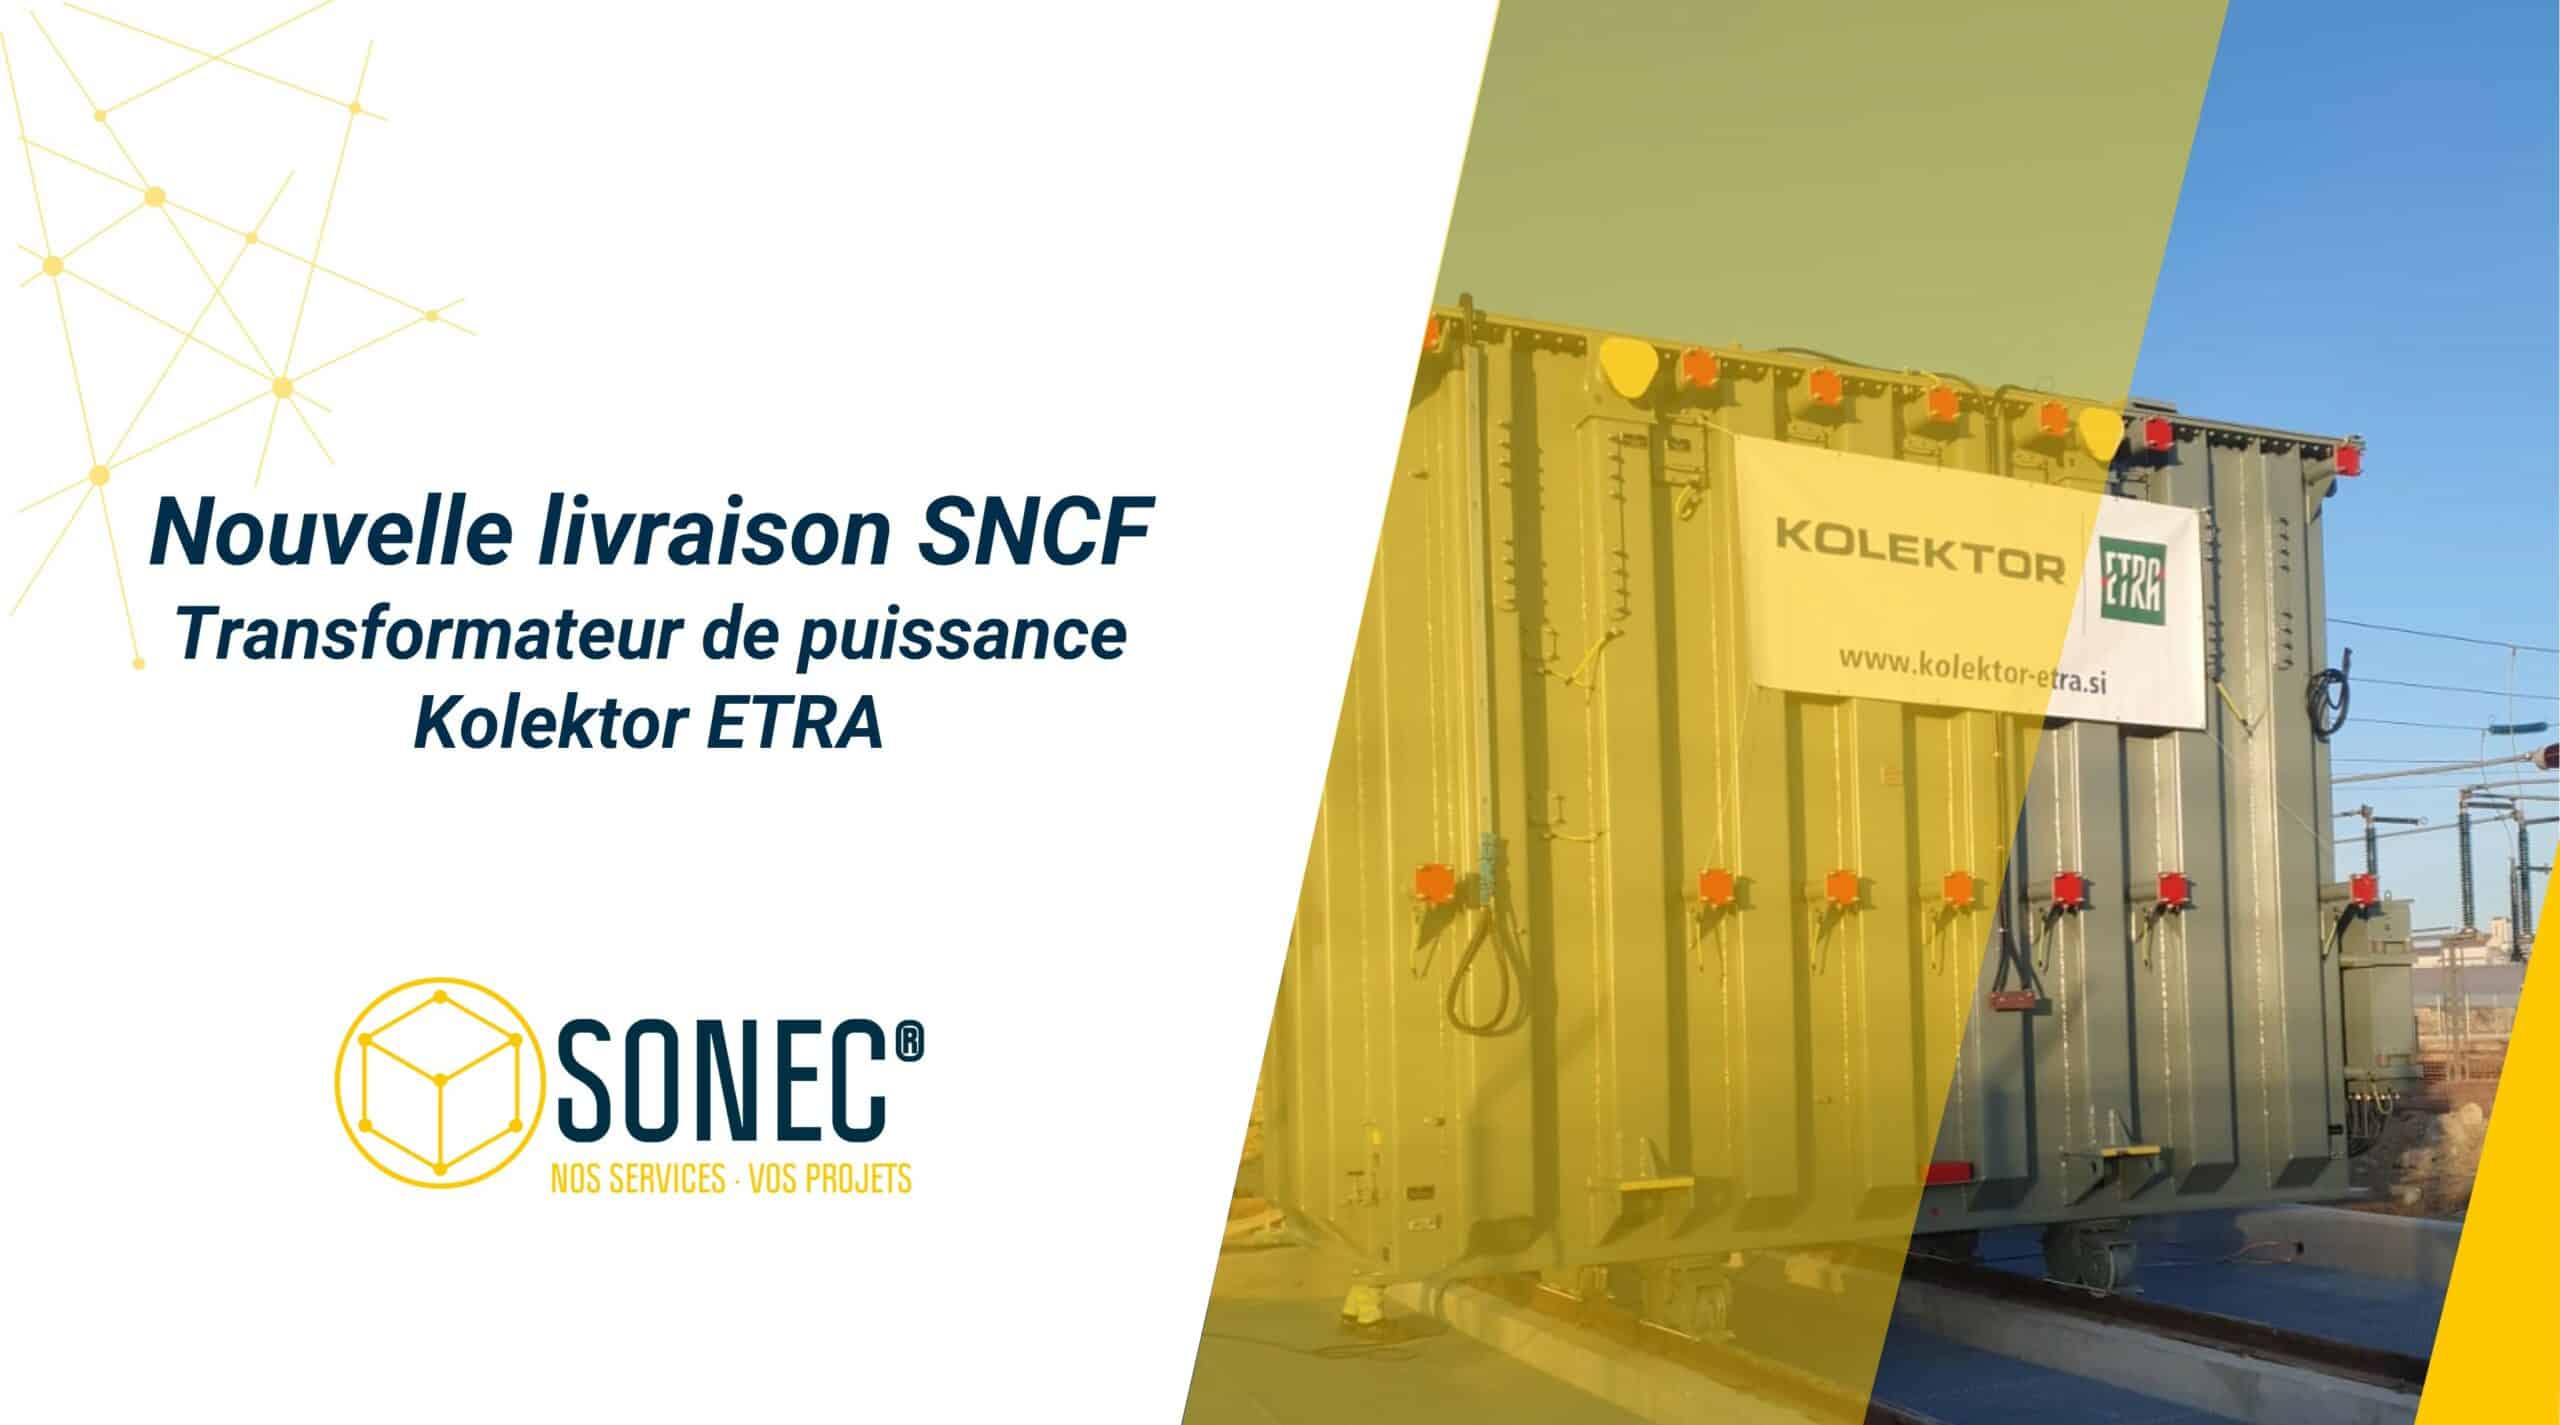 Sonec para la SNCF: entrega de un transformador de potencia Kolektor ETRA